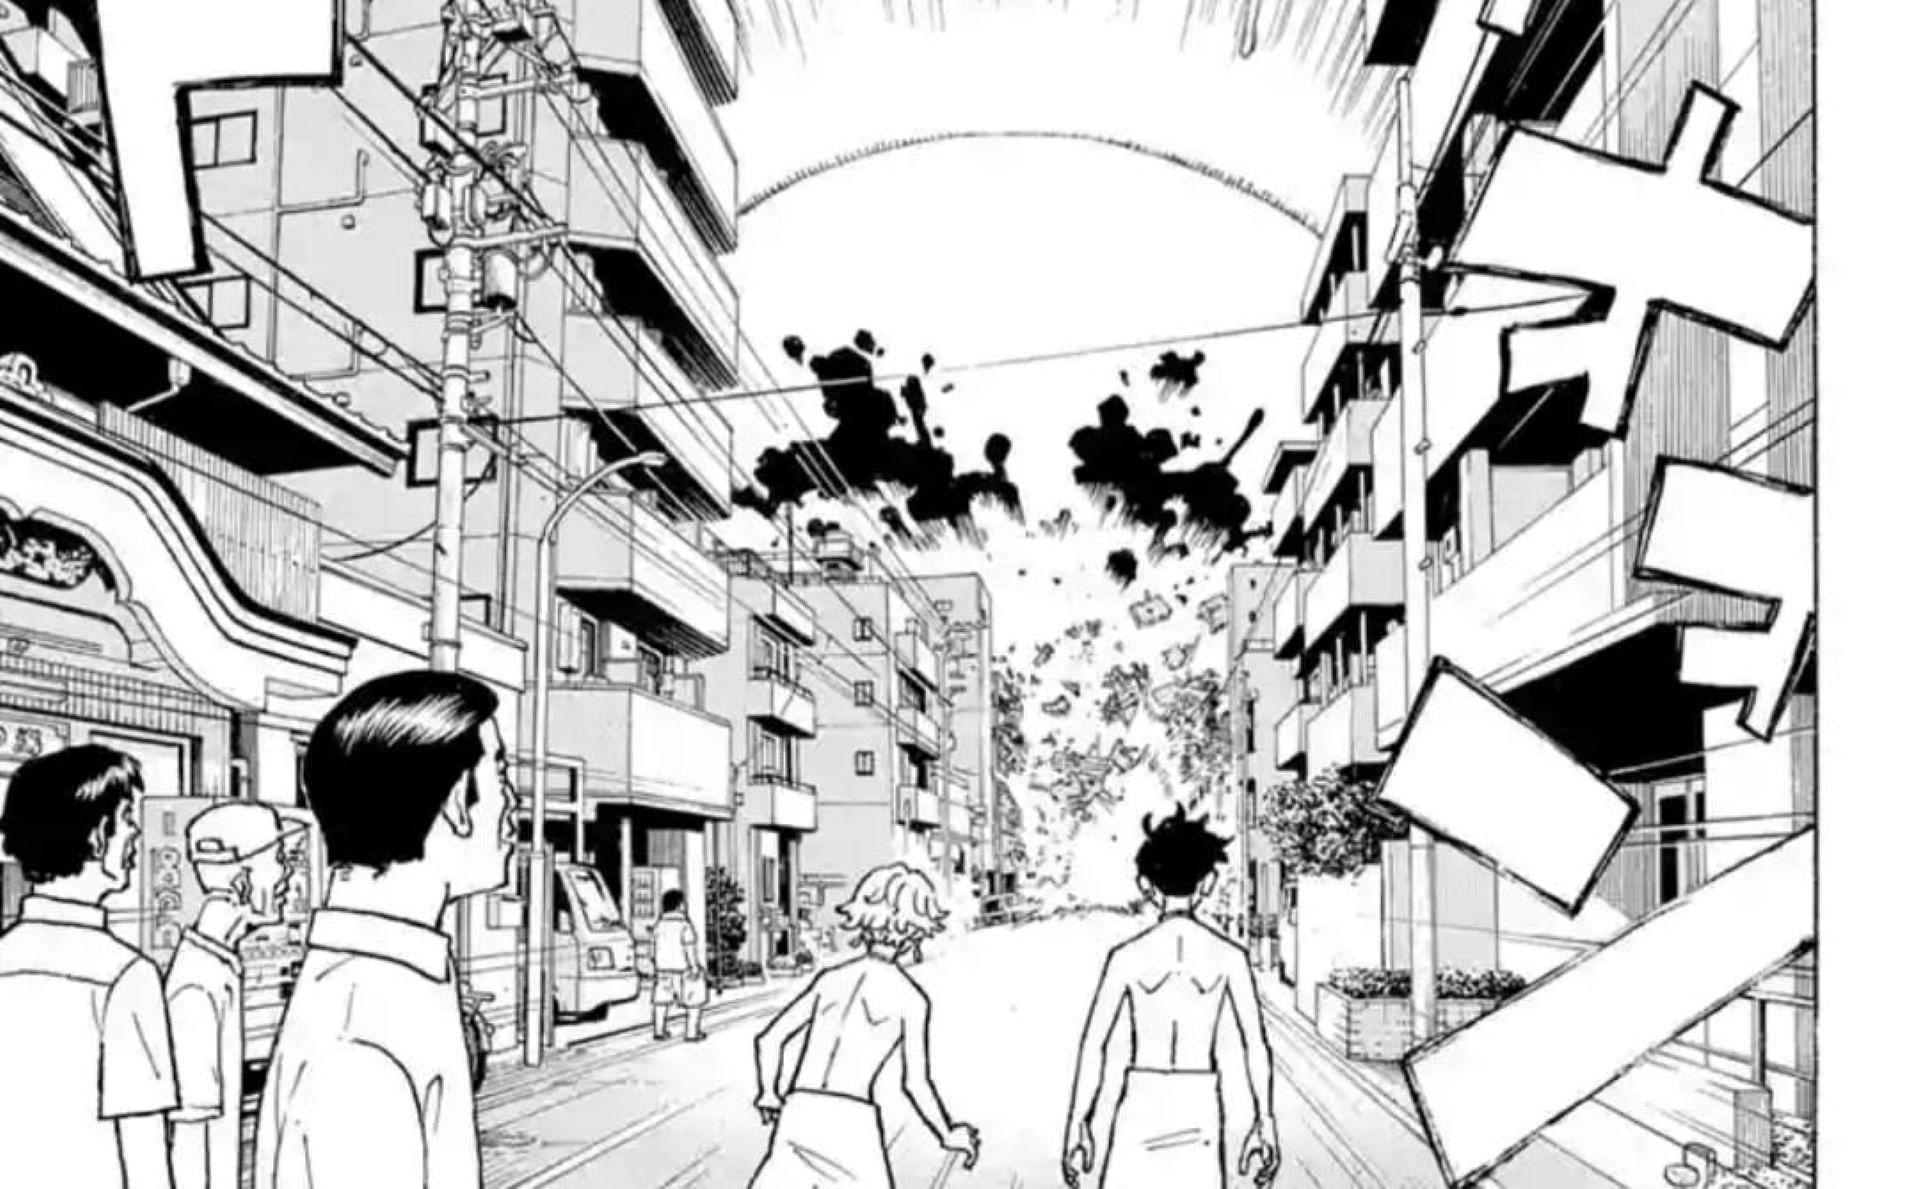 The meteorite impact, as seen in the manga (Image via Ken Wakui/Shueisha)